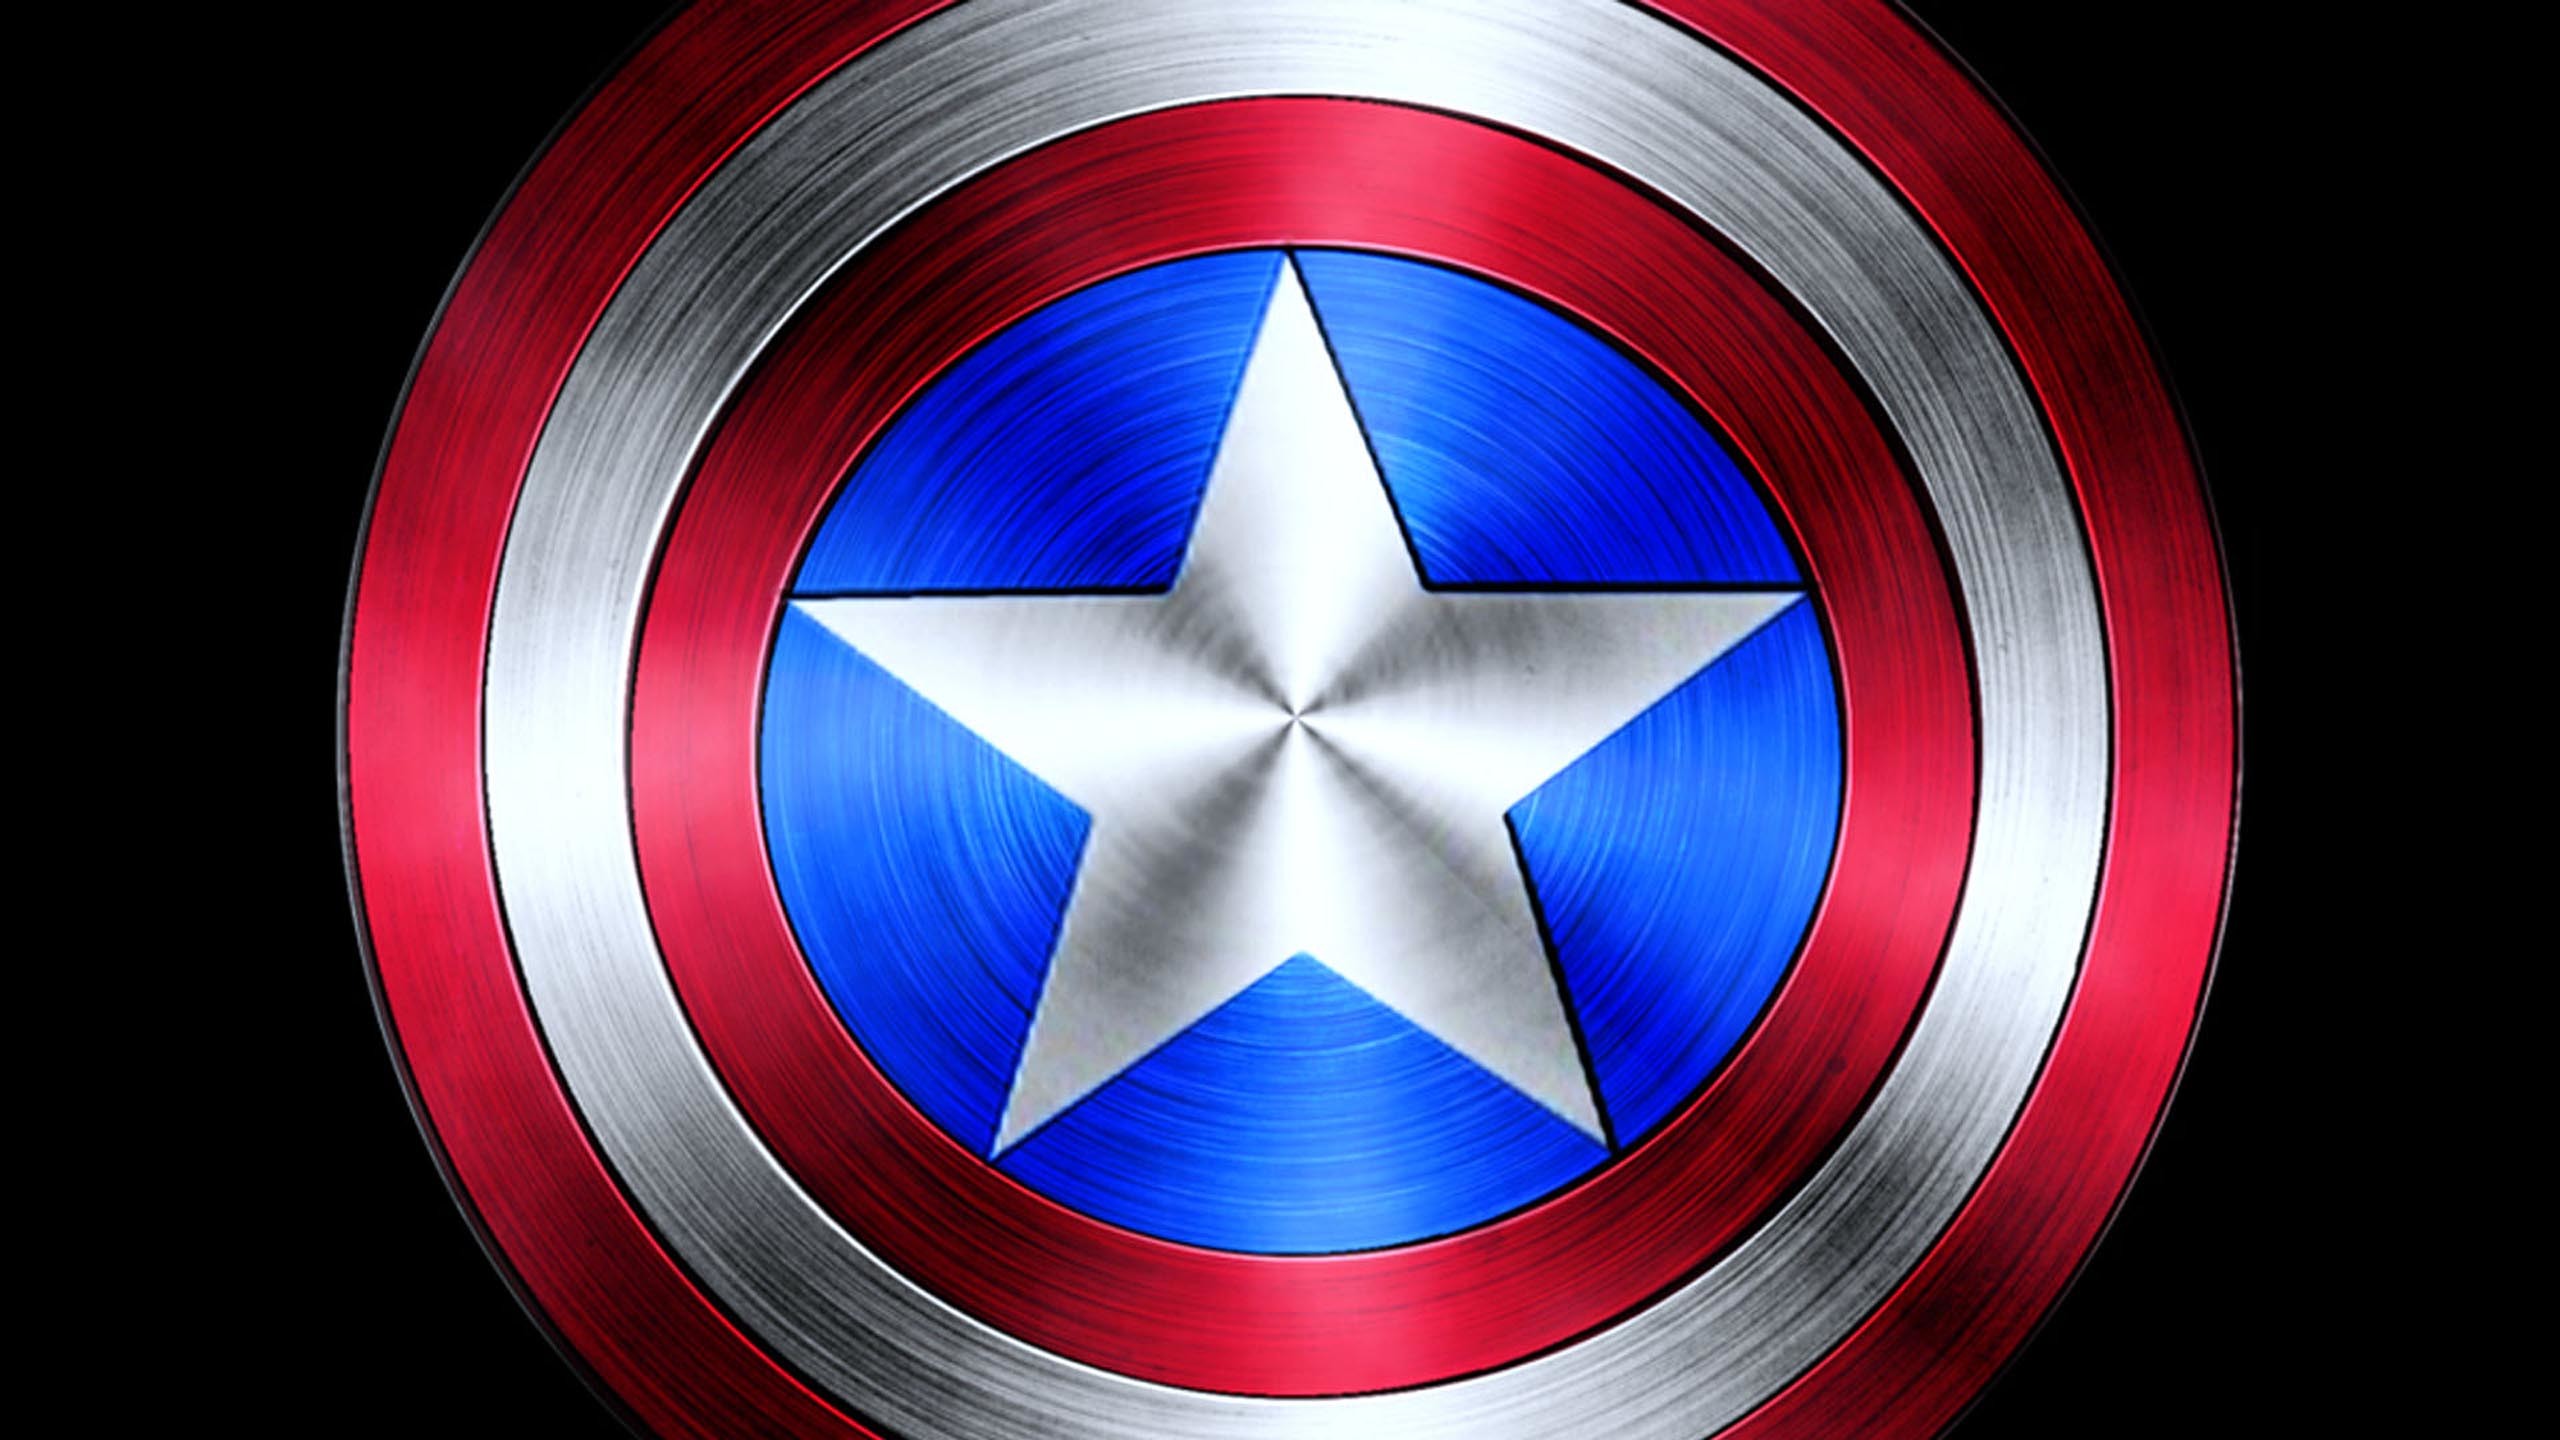 캡틴 아메리카 방패 벽지,캡틴 아메리카,깃발,강청색,소설 속의 인물,상징